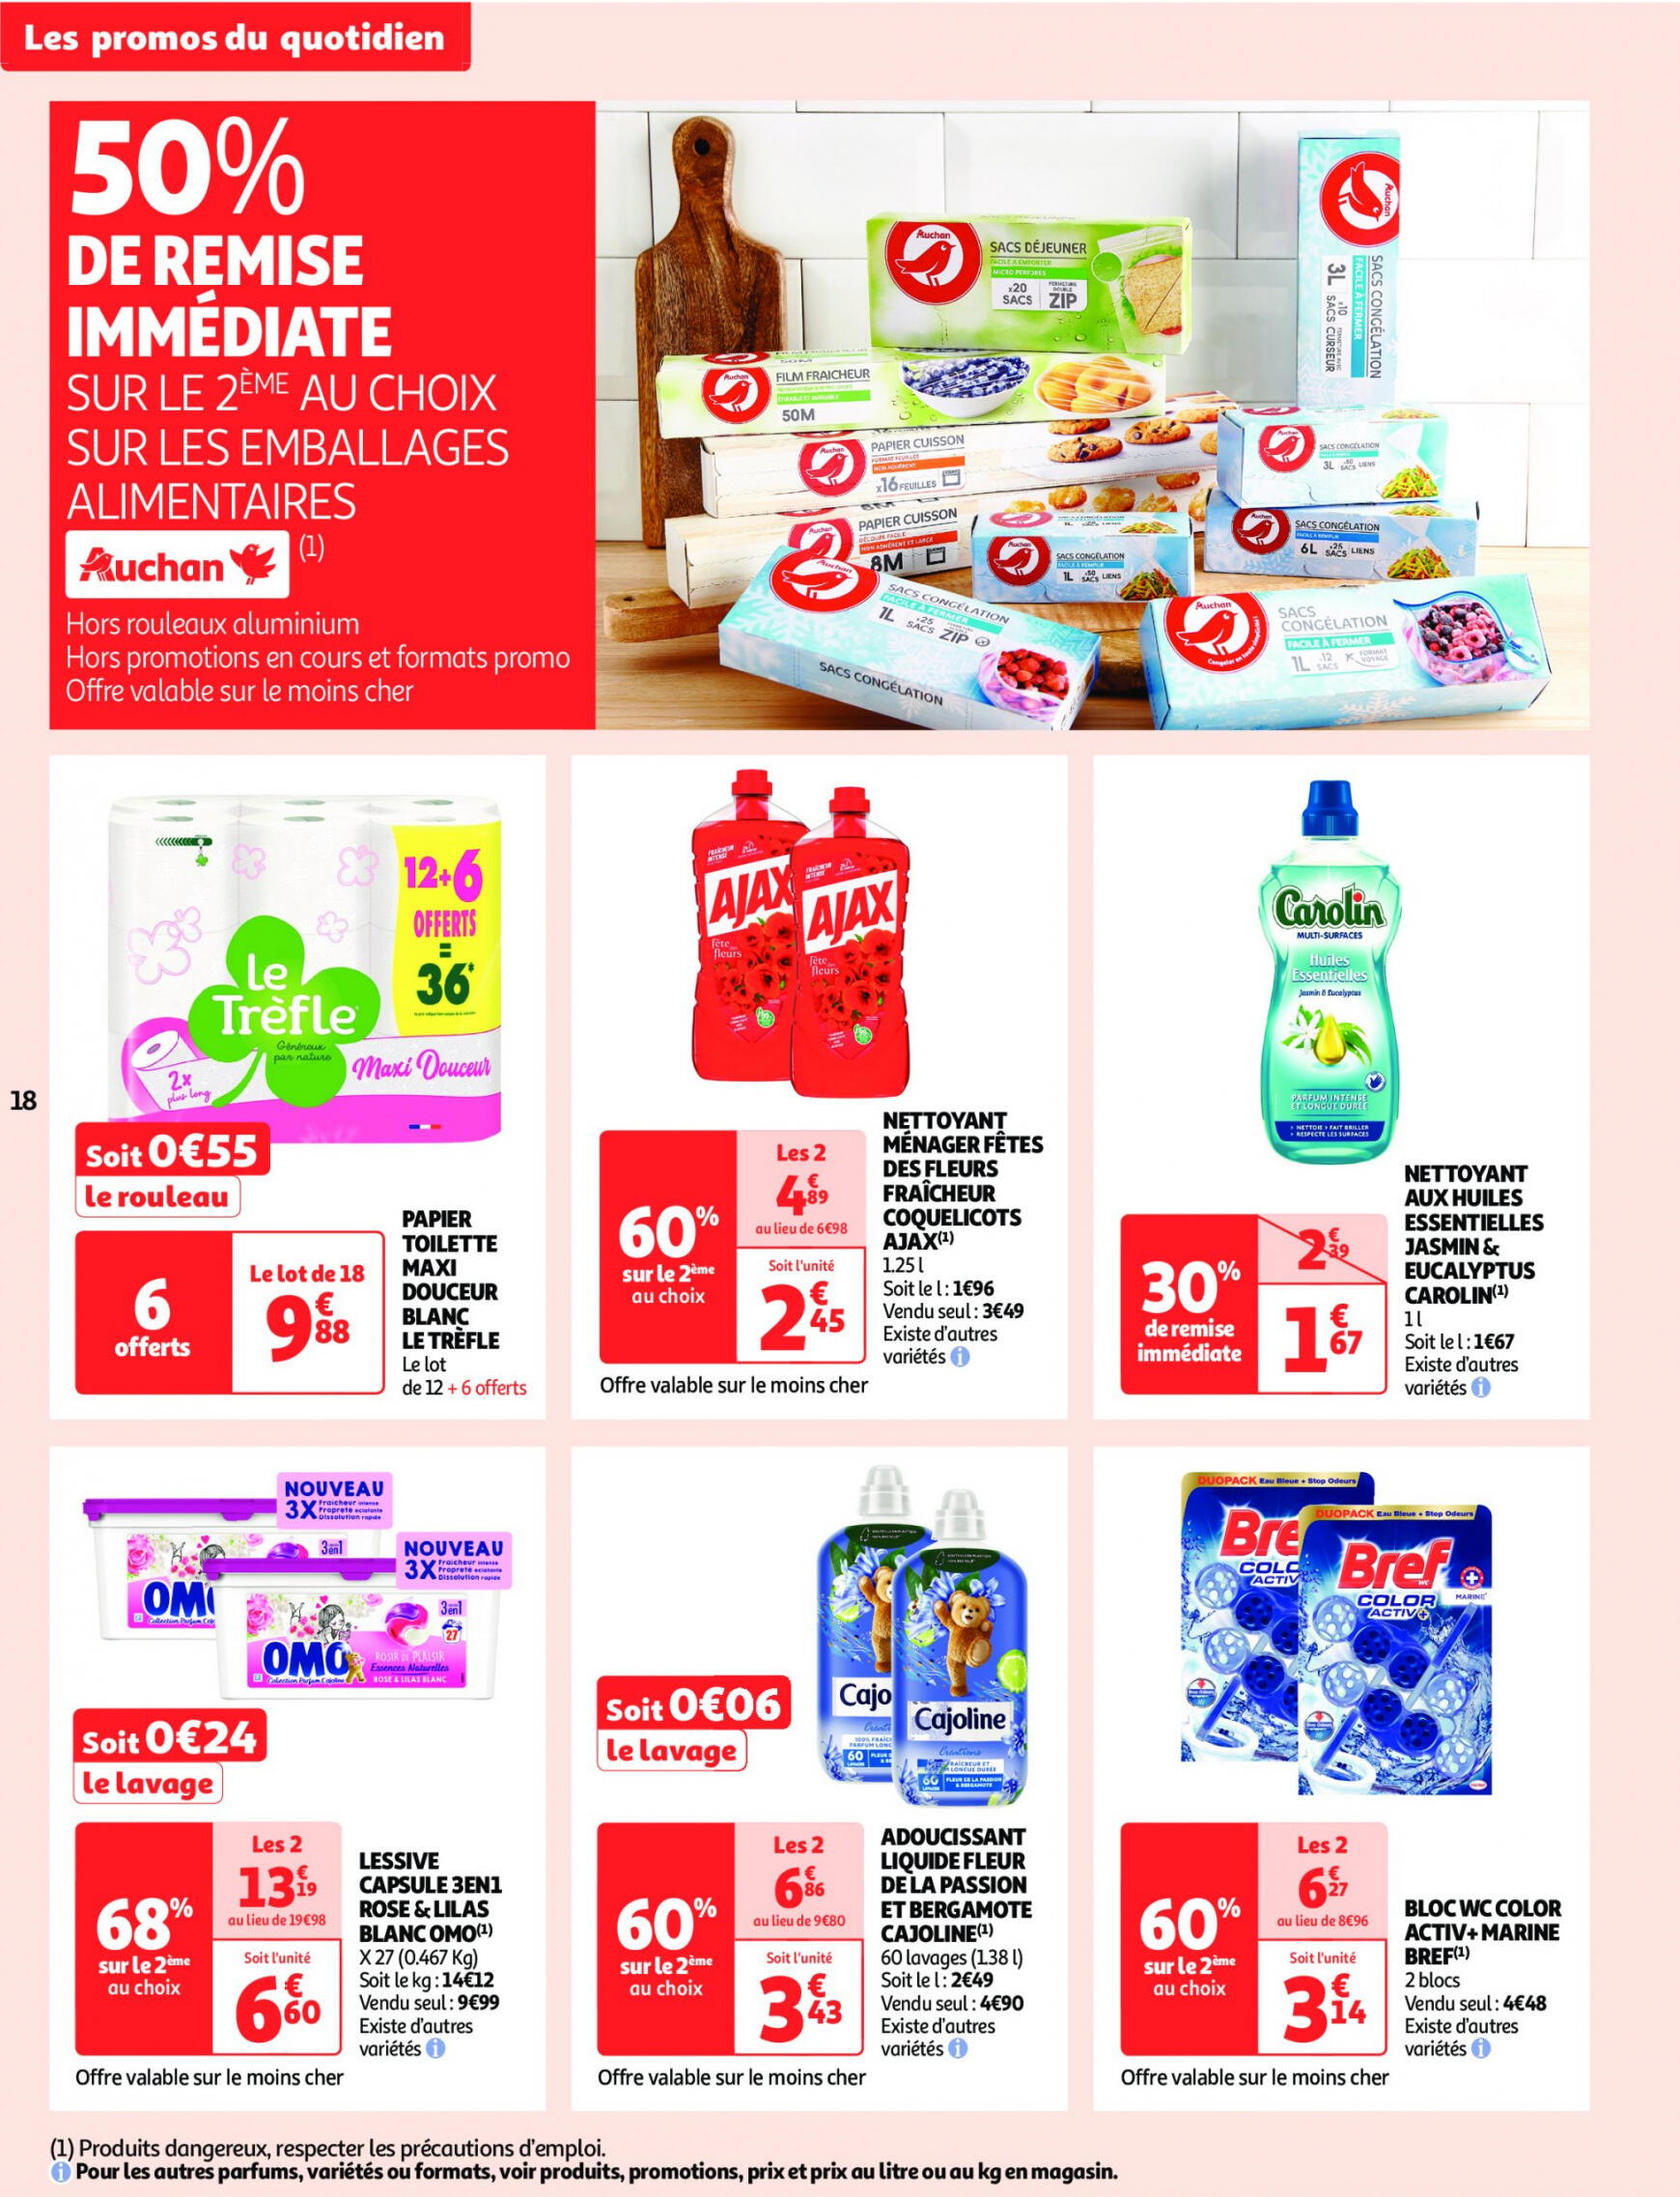 auchan - Auchan - On met le turbot sur les produits de la mer folder huidig 14.05. - 19.05. - page: 18